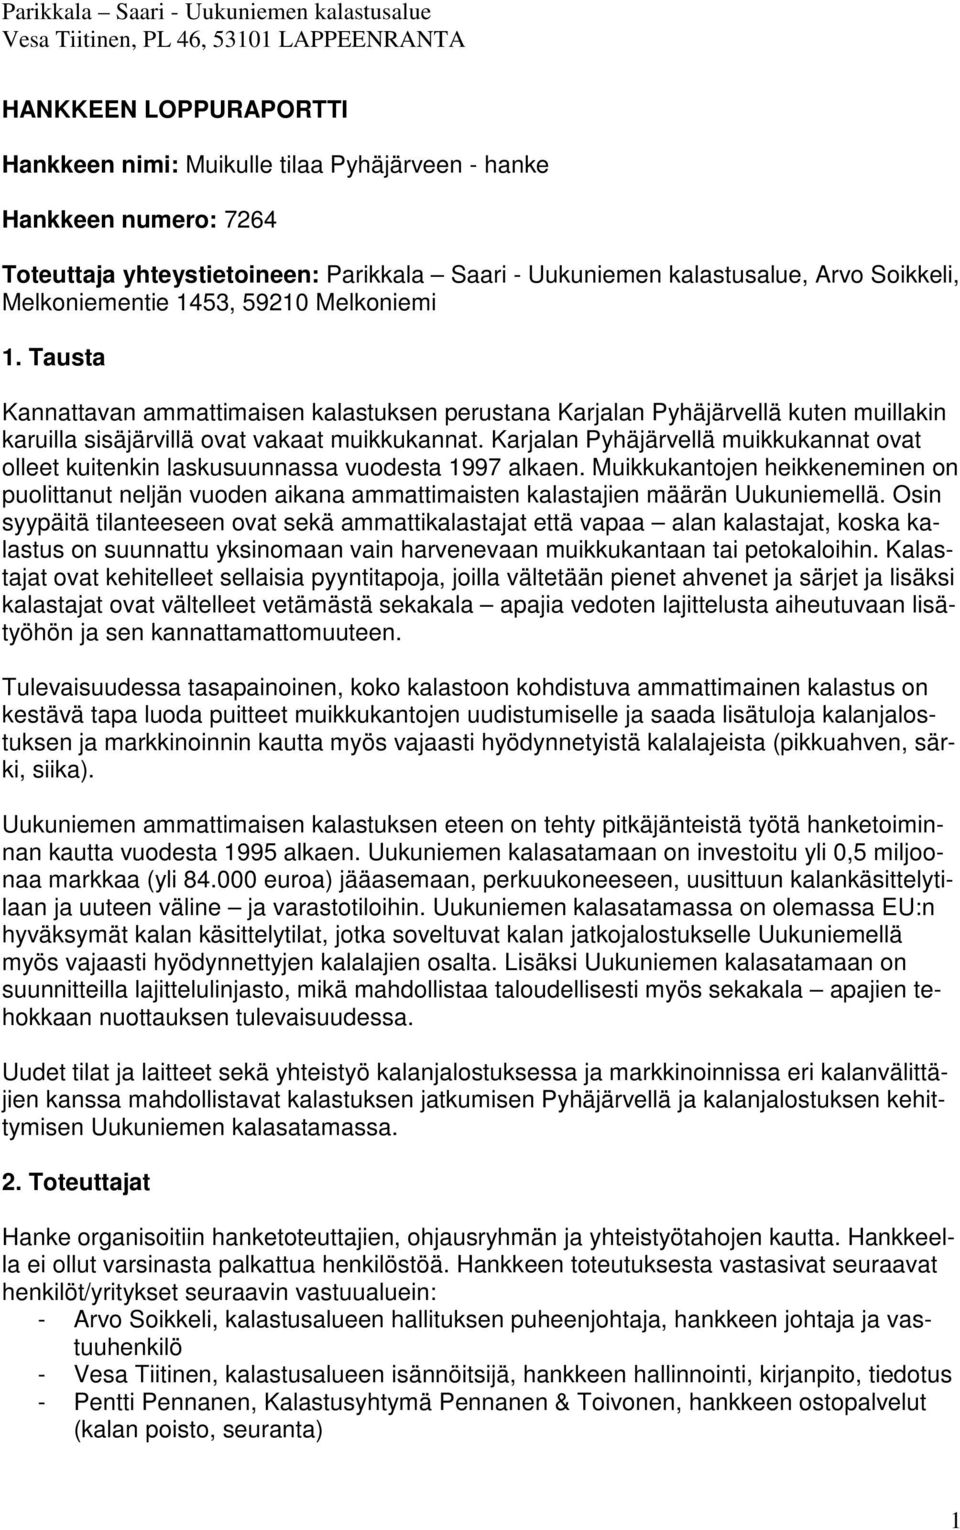 Karjalan Pyhäjärvellä muikkukannat ovat olleet kuitenkin laskusuunnassa vuodesta 1997 alkaen.